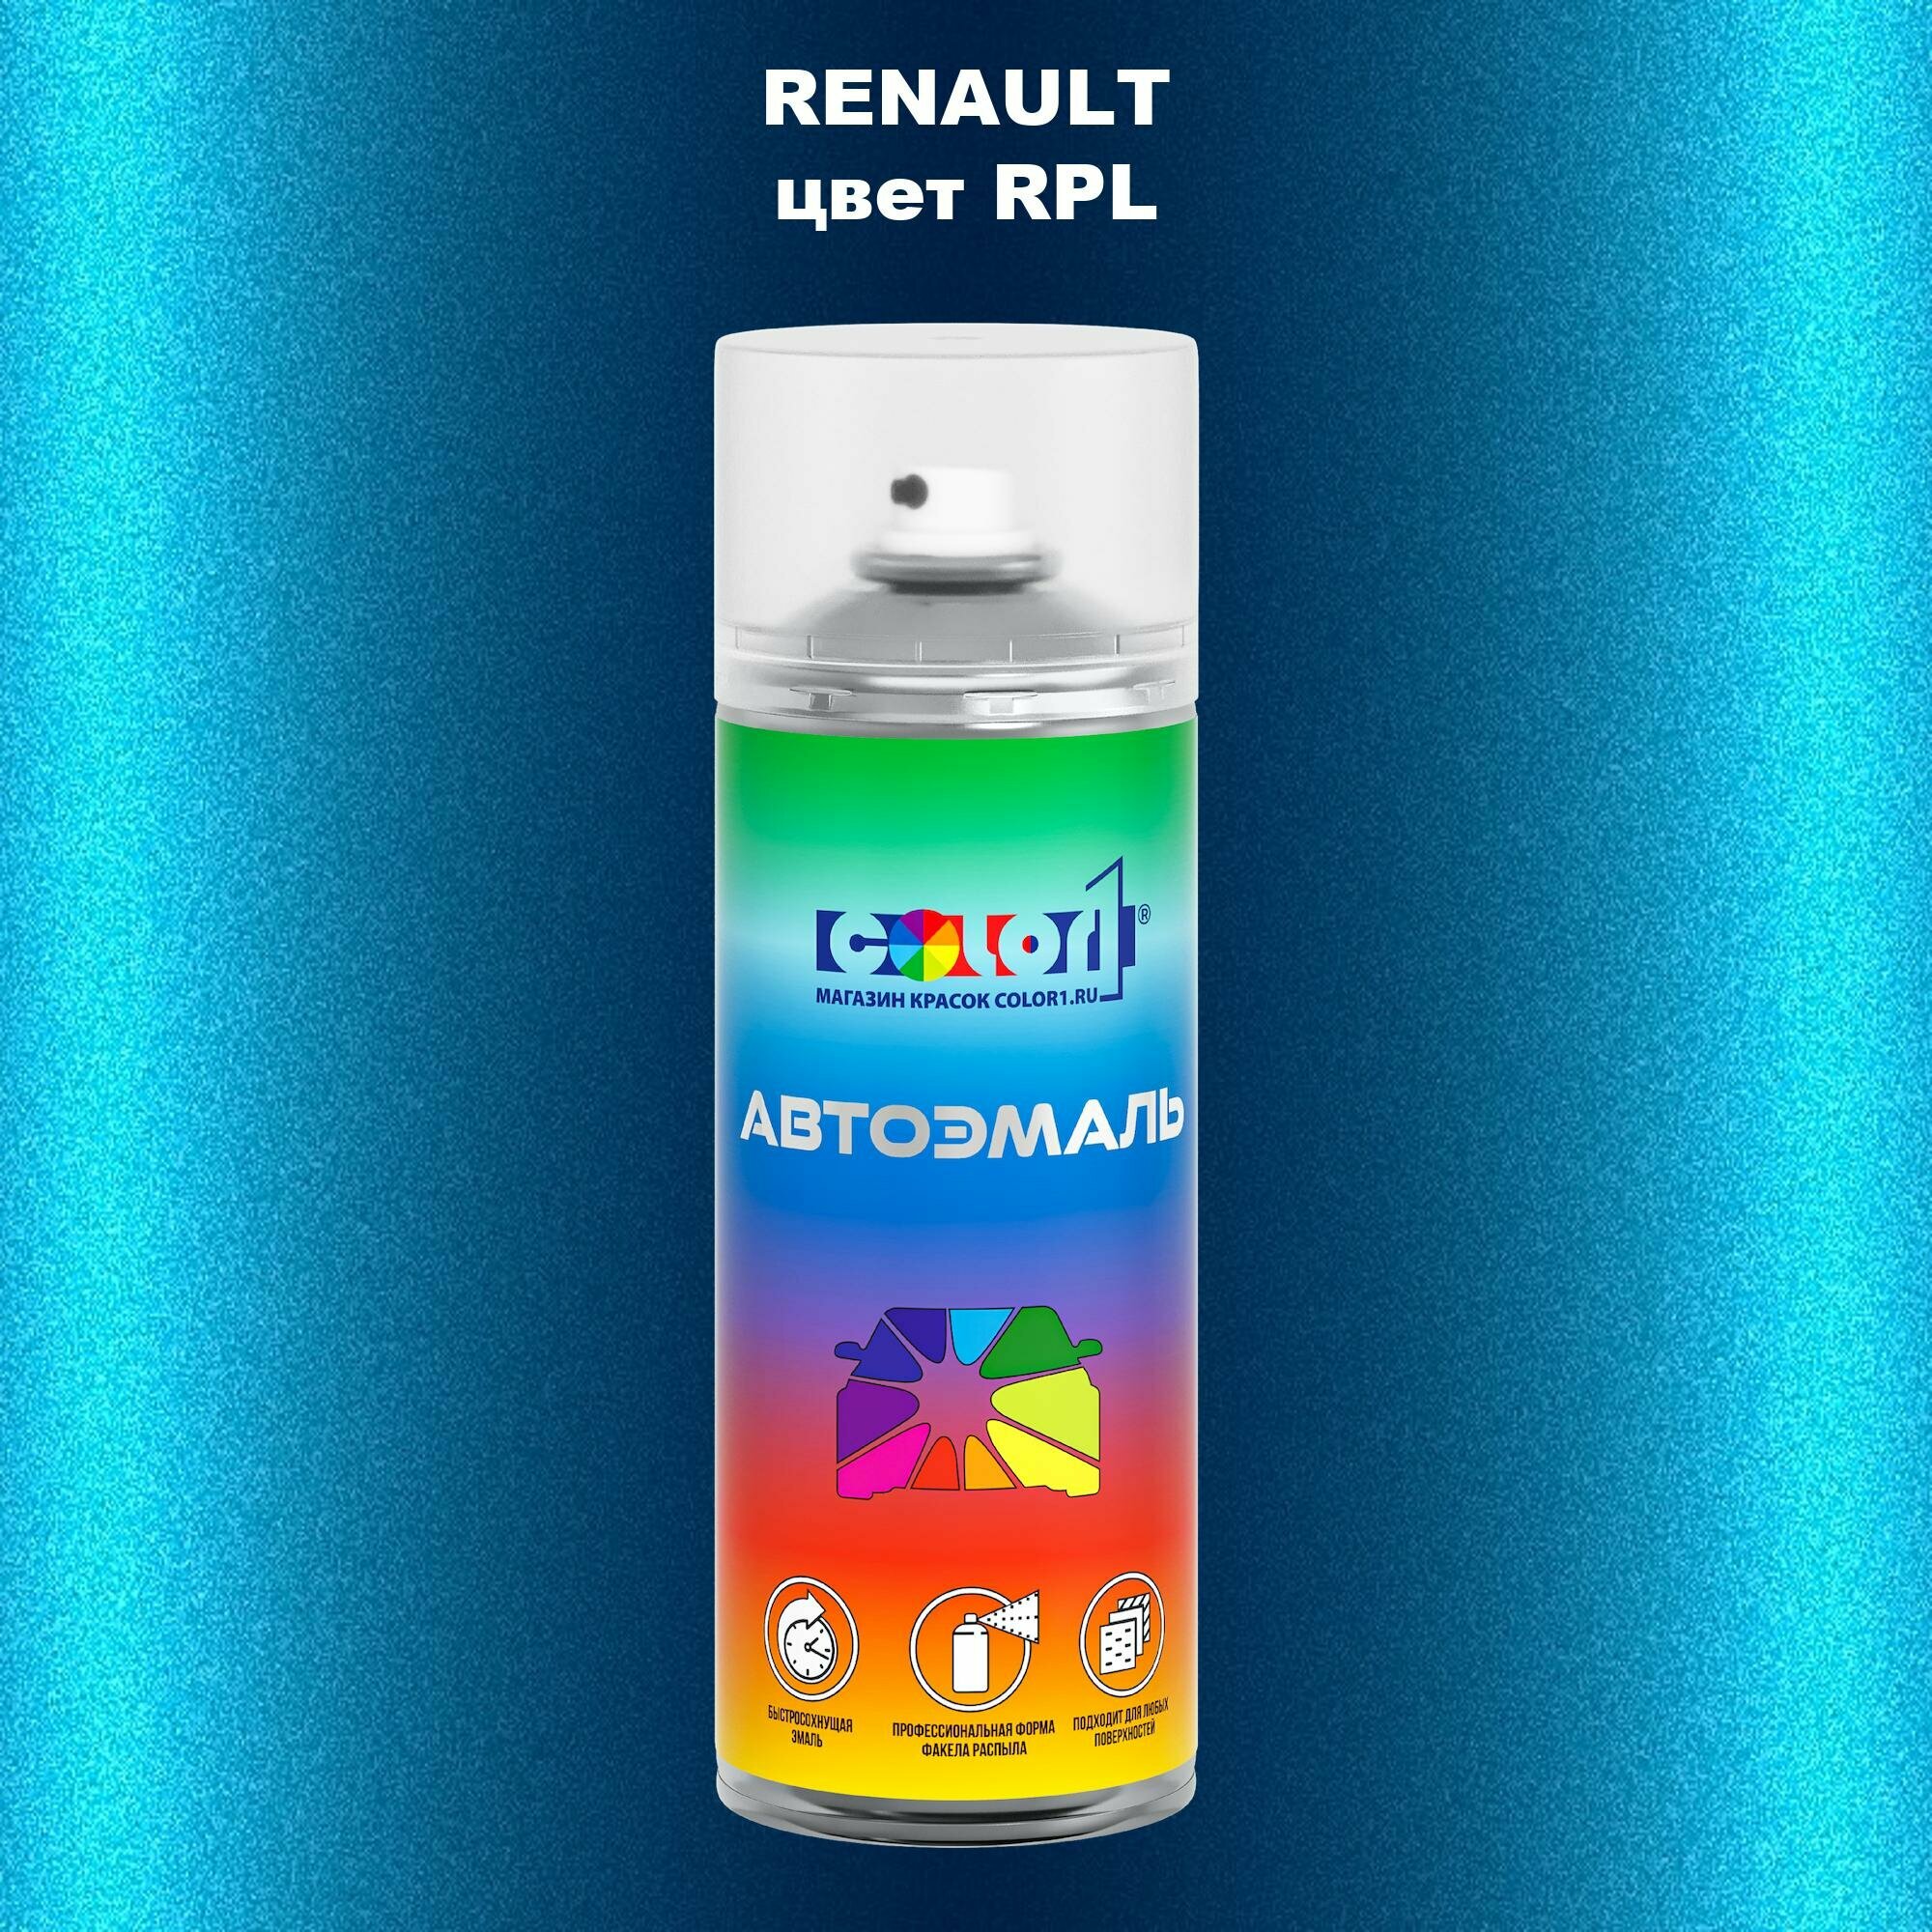 Аэрозольная краска 520мл, для RENAULT, цвет RPL - BLEU D'AZURITE